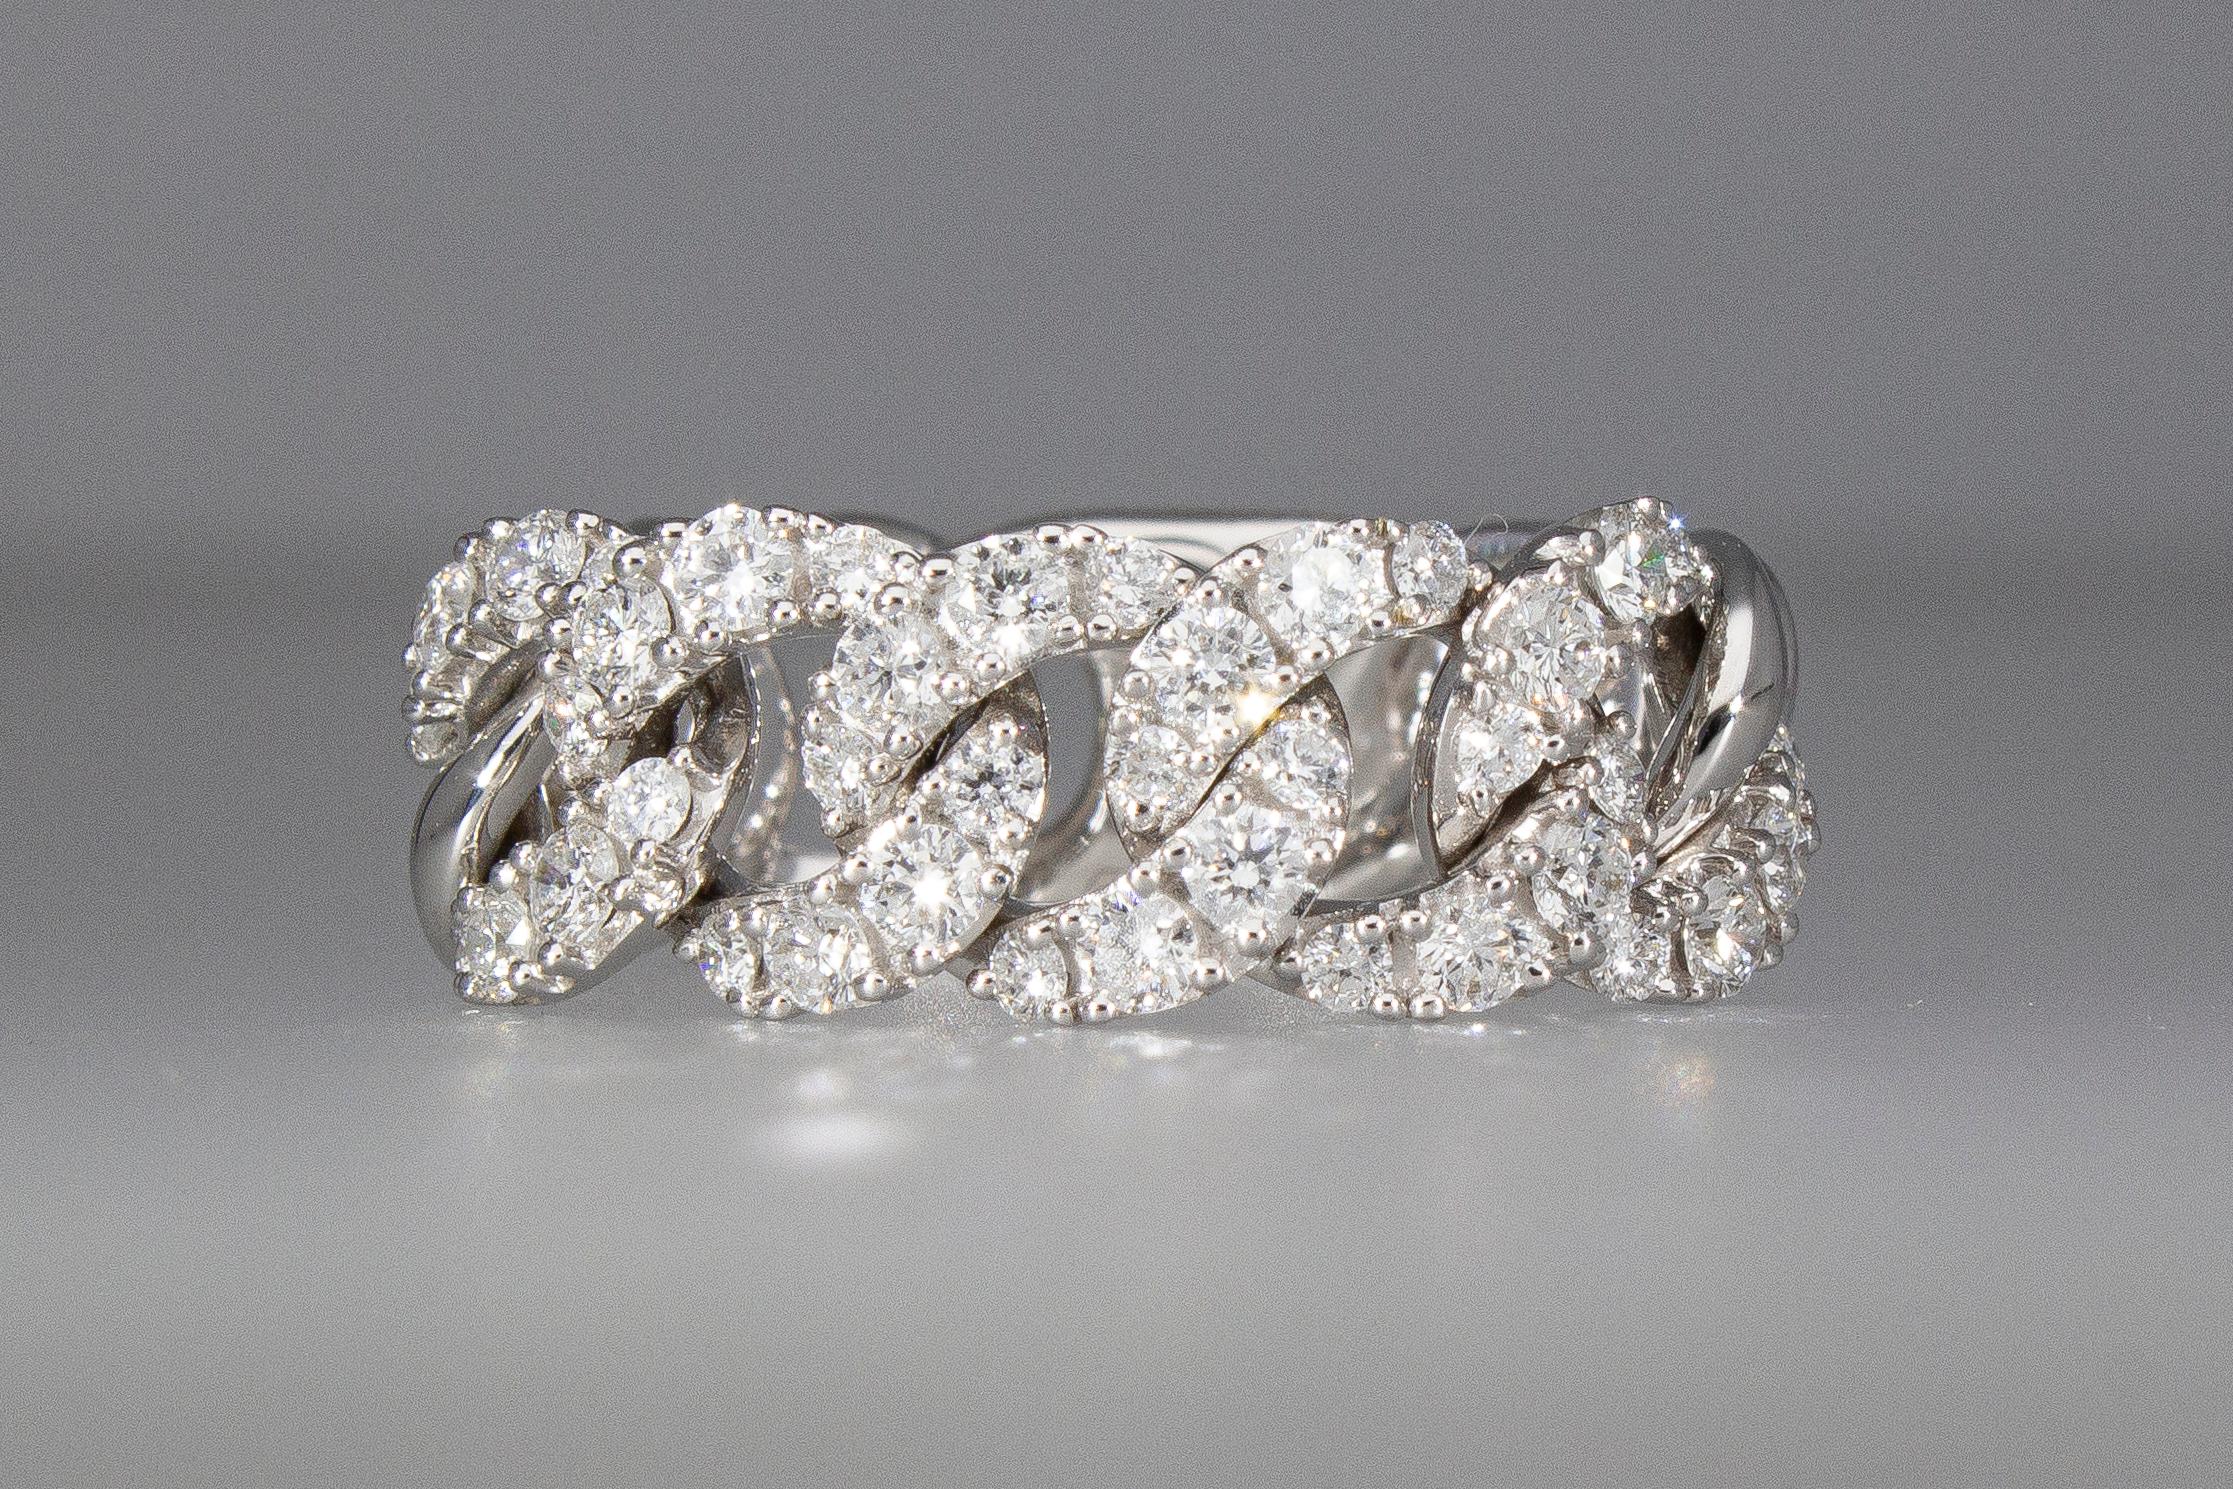 Bague modèle Groumette avec 40 diamants taille brillant sertis sur 5 maillons, pour un poids total de ct 0.90.
La bague a des maillons souples 5 avec diamants et 6 sans diamants, plus 1 maillon pour permettre un éventuel changement de